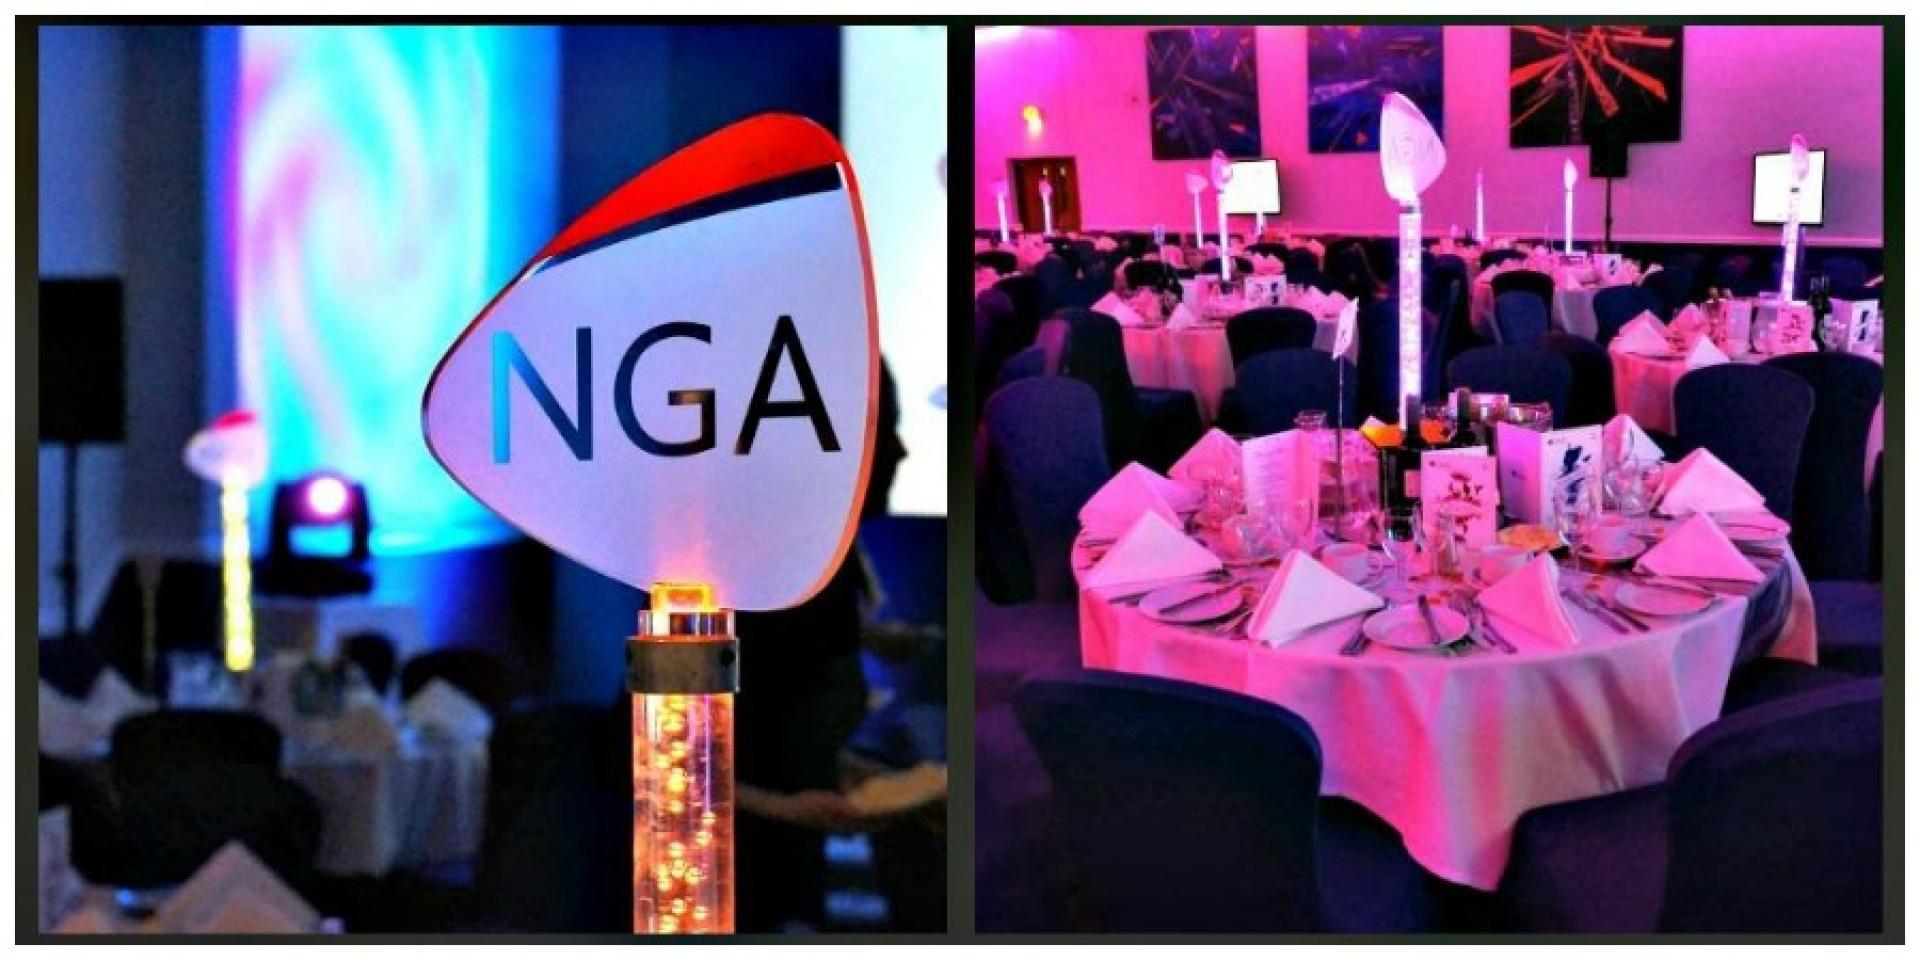 NGA HR Event branding